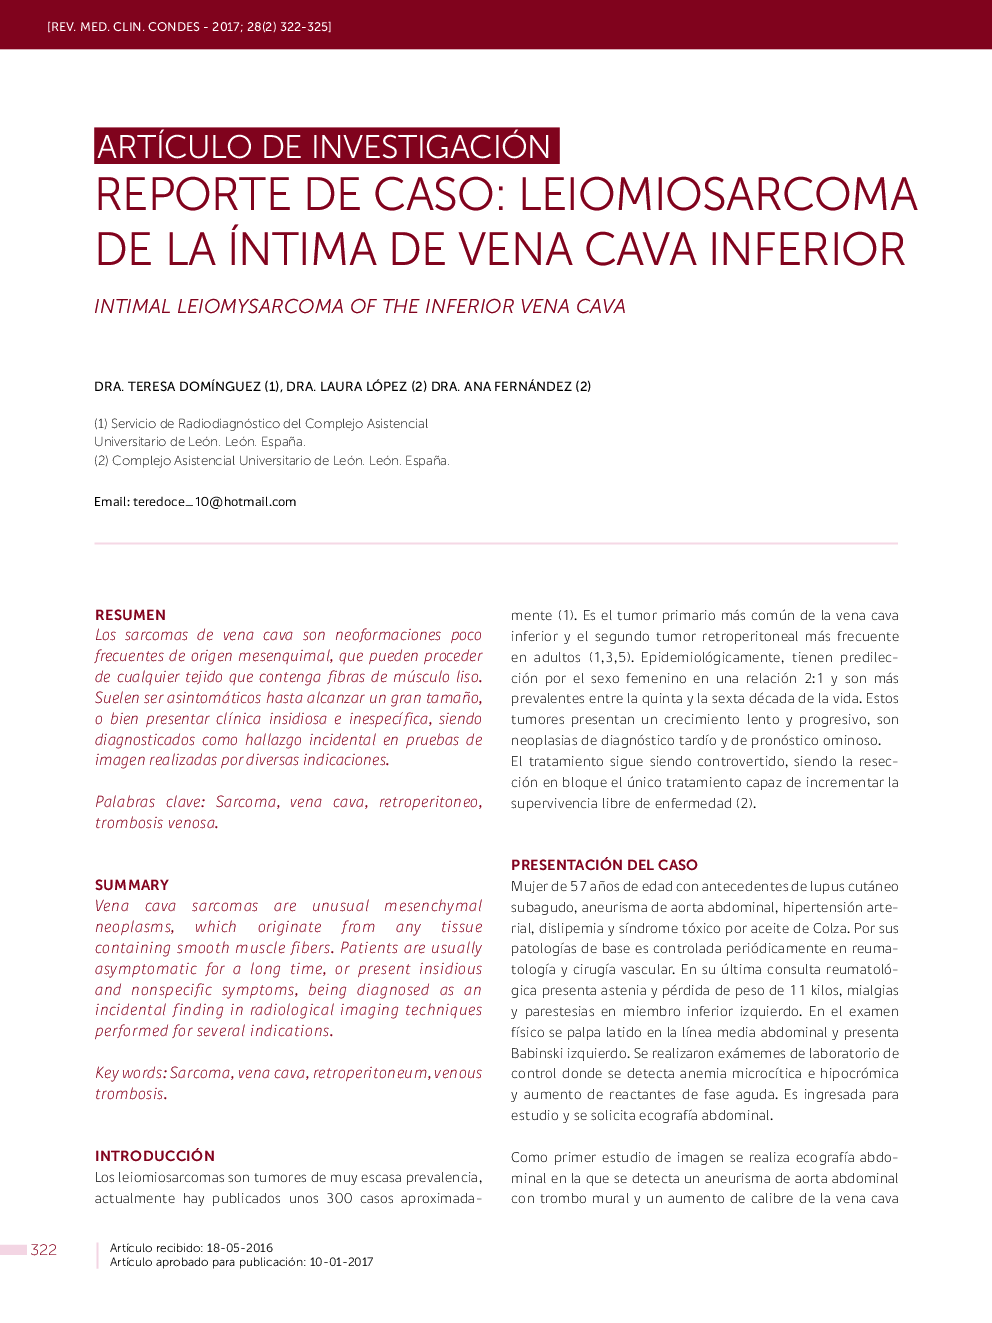 REPORTE DE CASO: LEIOMIOSARCOMA DE LA ÍNTIMA DE VENA CAVA INFERIOR